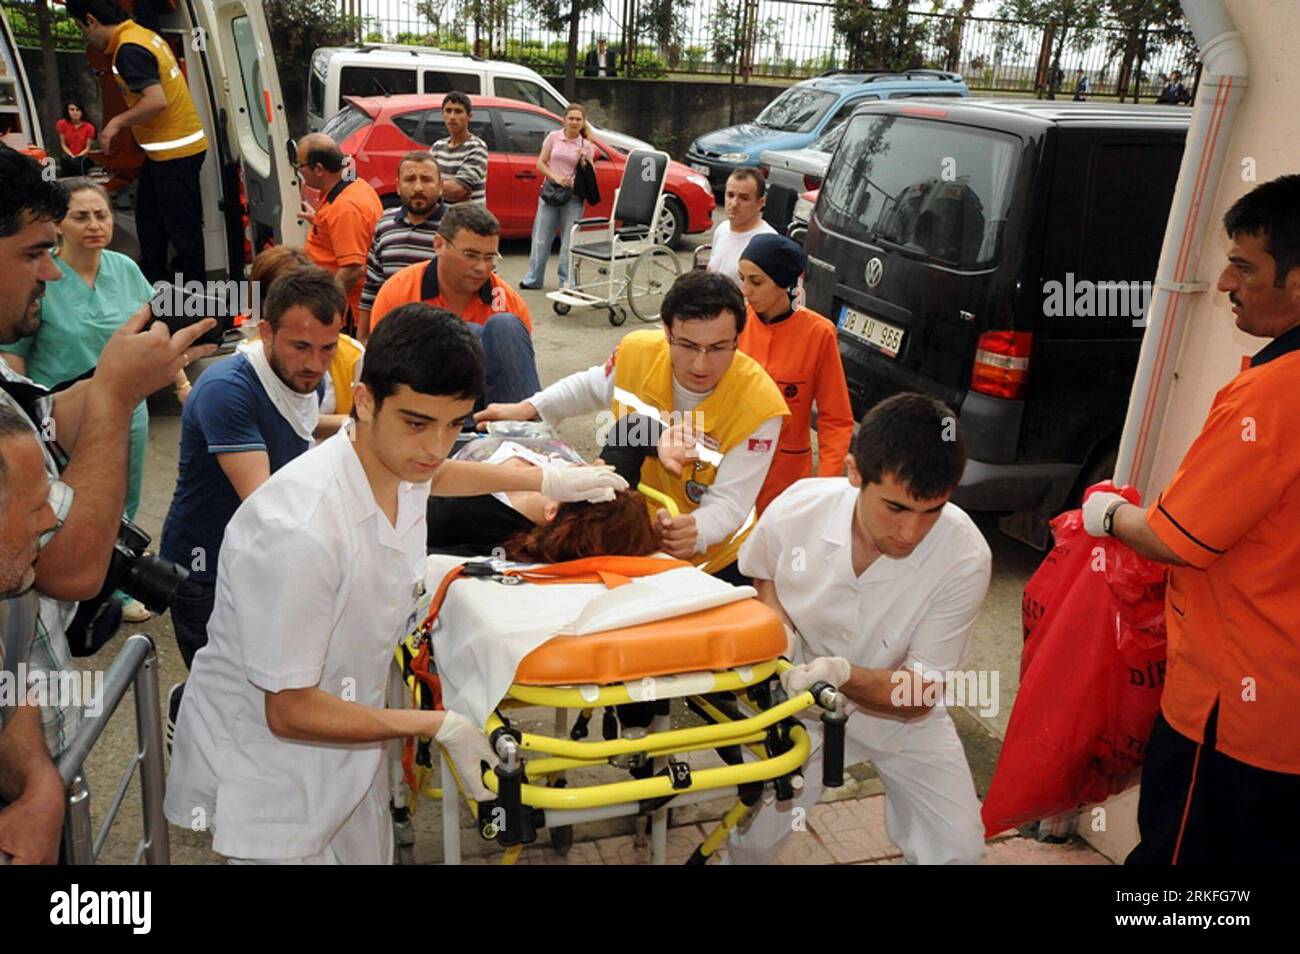 Bildnummer : 55417313 Datum : 31.05.2011 Copyright : imago/Xinhua (110531) -- HOPE (TURQUIE), 31 mai 2011 (Xinhua) -- le personnel médical envoie une personne blessée dans une ambulance pendant les troubles dans la ville de Hopa, Turquie, le 31 mai 2011. Un homme est mort d'une crise cardiaque et un agent de sécurité a été grièvement blessé dans des troubles de rue alors que le Premier ministre turc Tayyip Erdogan se préparait à s'adresser mardi à un rassemblement électoral dans le nord du pays, selon les médias. (Xinhua/Anadolu) (wjd) TURQUIE-RASSEMBLEMENT ÉLECTORAL-TROUBLES PUBLICATIONxNOTxINxCHN Politik Wahl Parlamentswahl Türkei Unruhen Randale kbdig xng 20 Banque D'Images